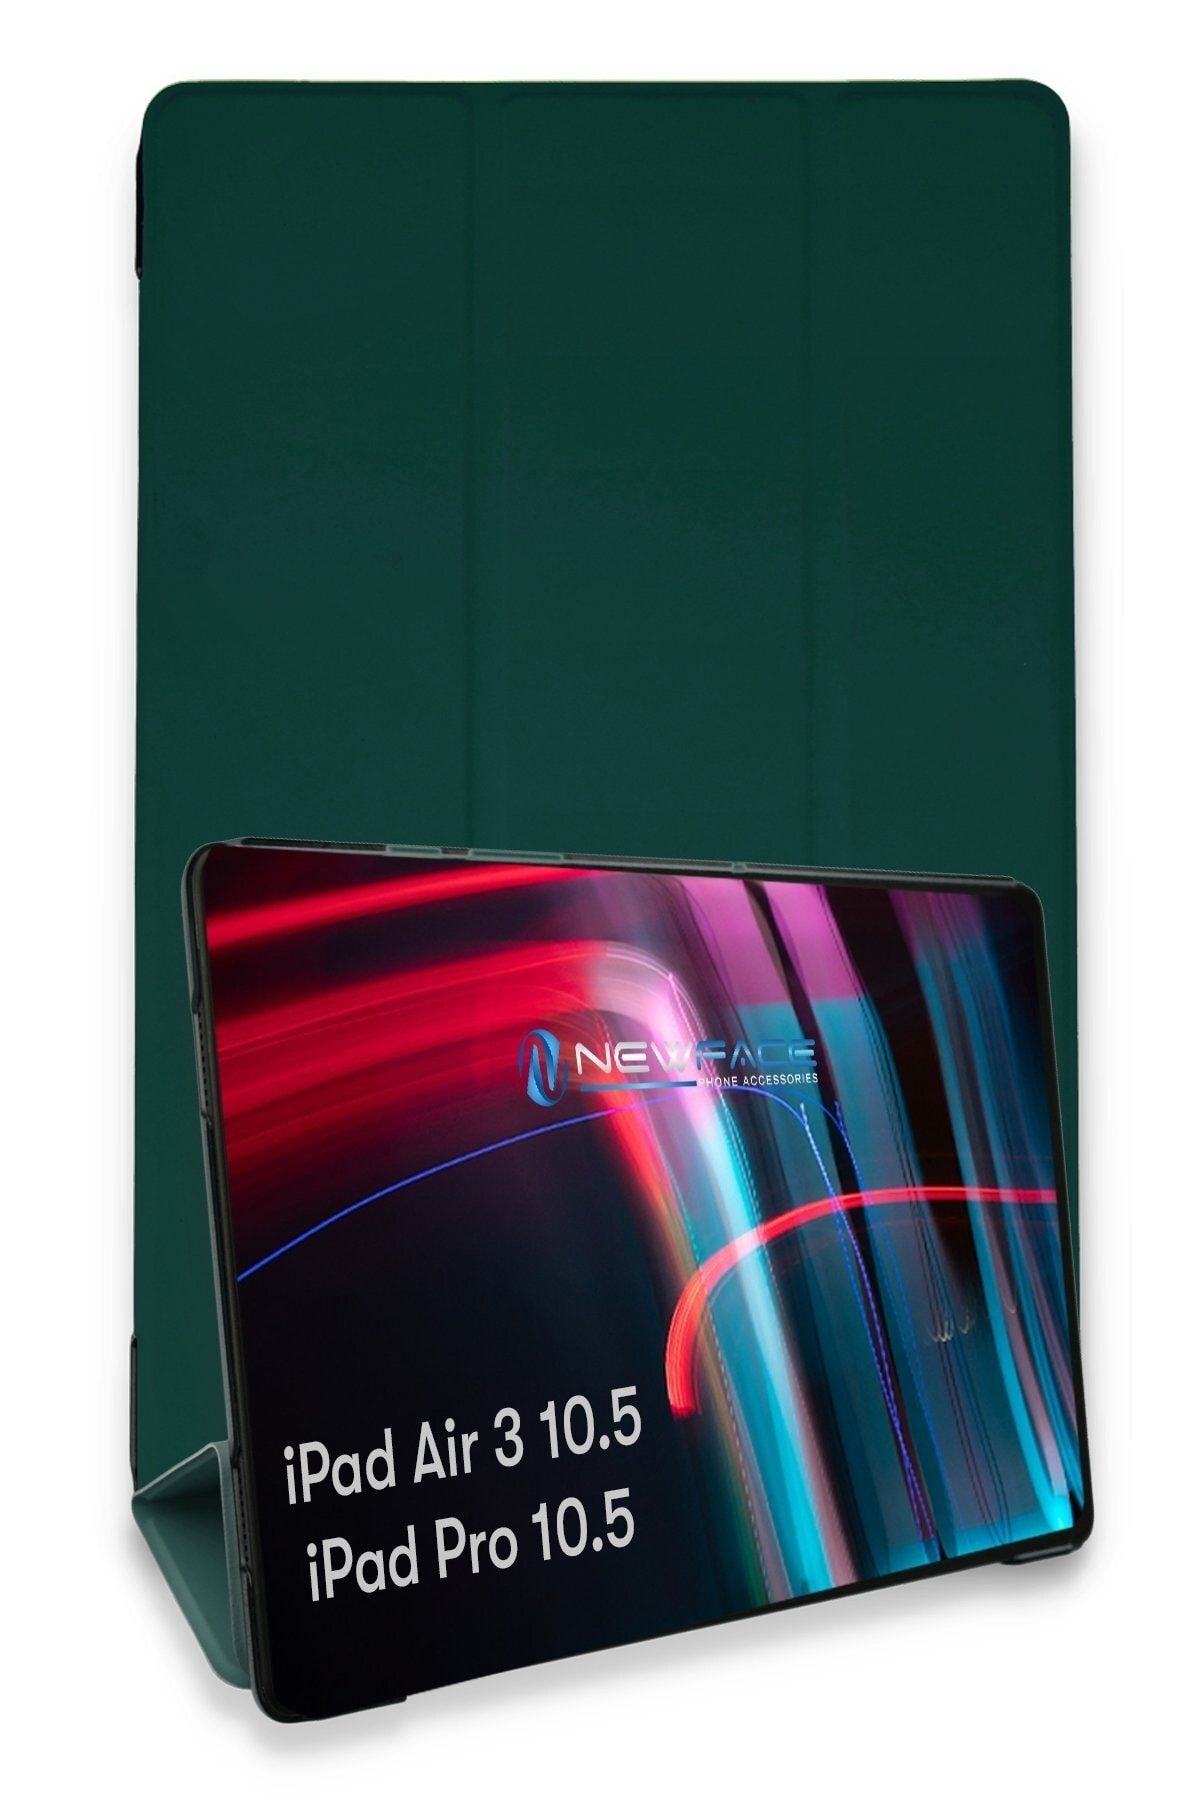 Bilişim Aksesuar Ipad Pro 10.5 Kılıf Tablet Smart Cover Kılıf - Koyu Yeşil